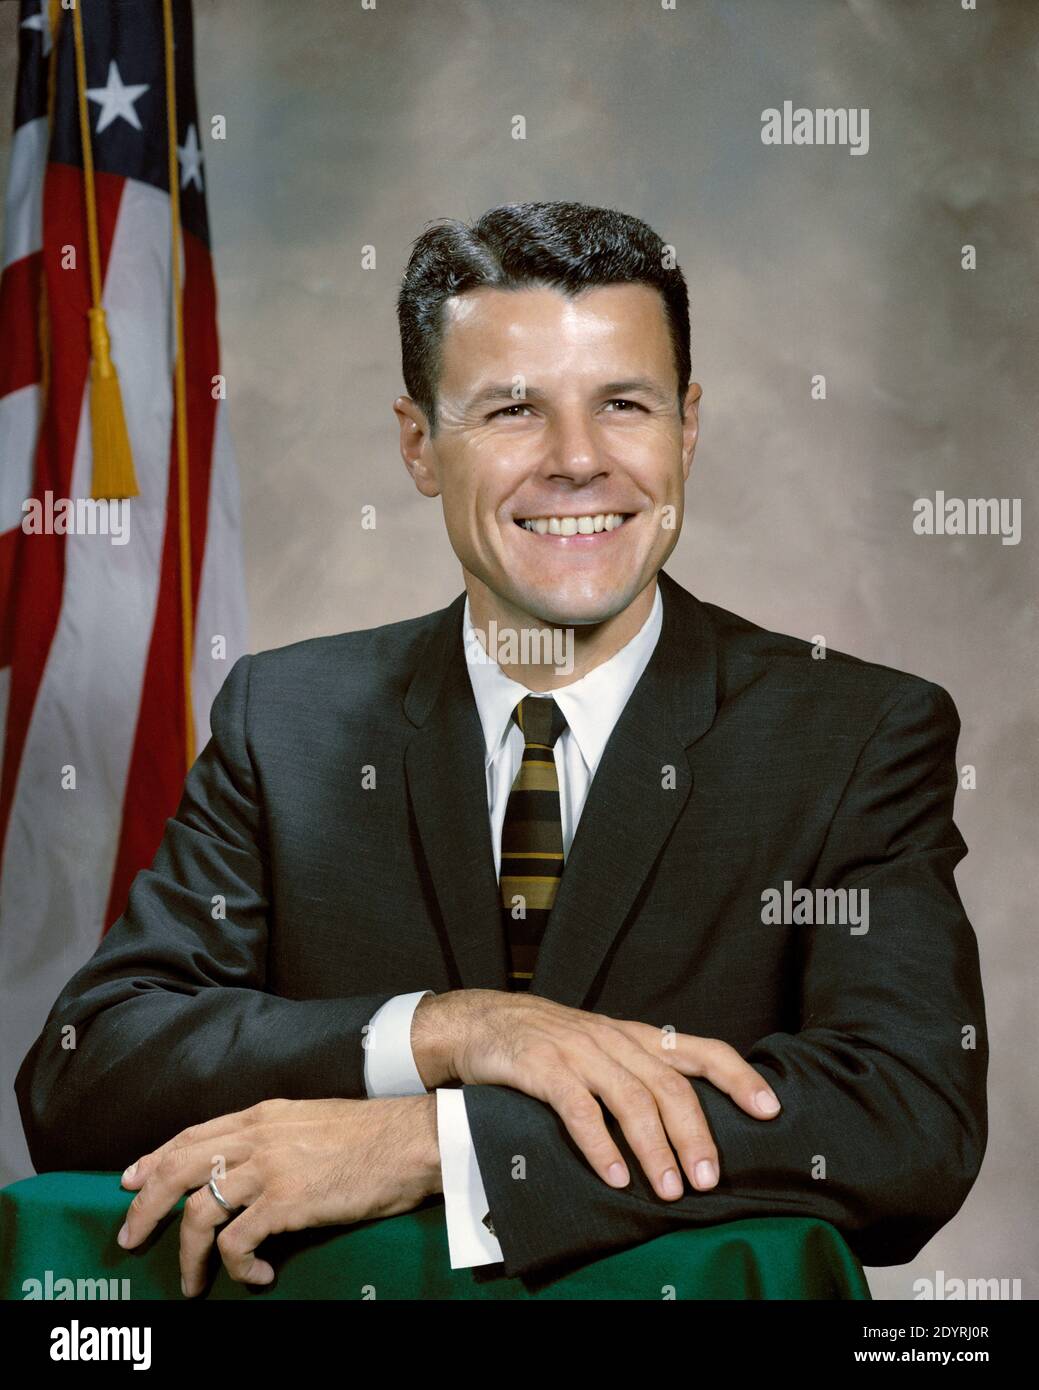 Charles Arthur Bassett II, Major, USAF, (1931 – 28 de febrero de 1966) Ingeniero eléctrico estadounidense y piloto de pruebas de la Fuerza Aérea de los Estados Unidos. Fue seleccionado como astronauta de la NASA en 1963 y fue asignado a Gemini 9. Murió en un accidente de avión durante el entrenamiento para su primer vuelo espacial. Es un memorial Foto de stock